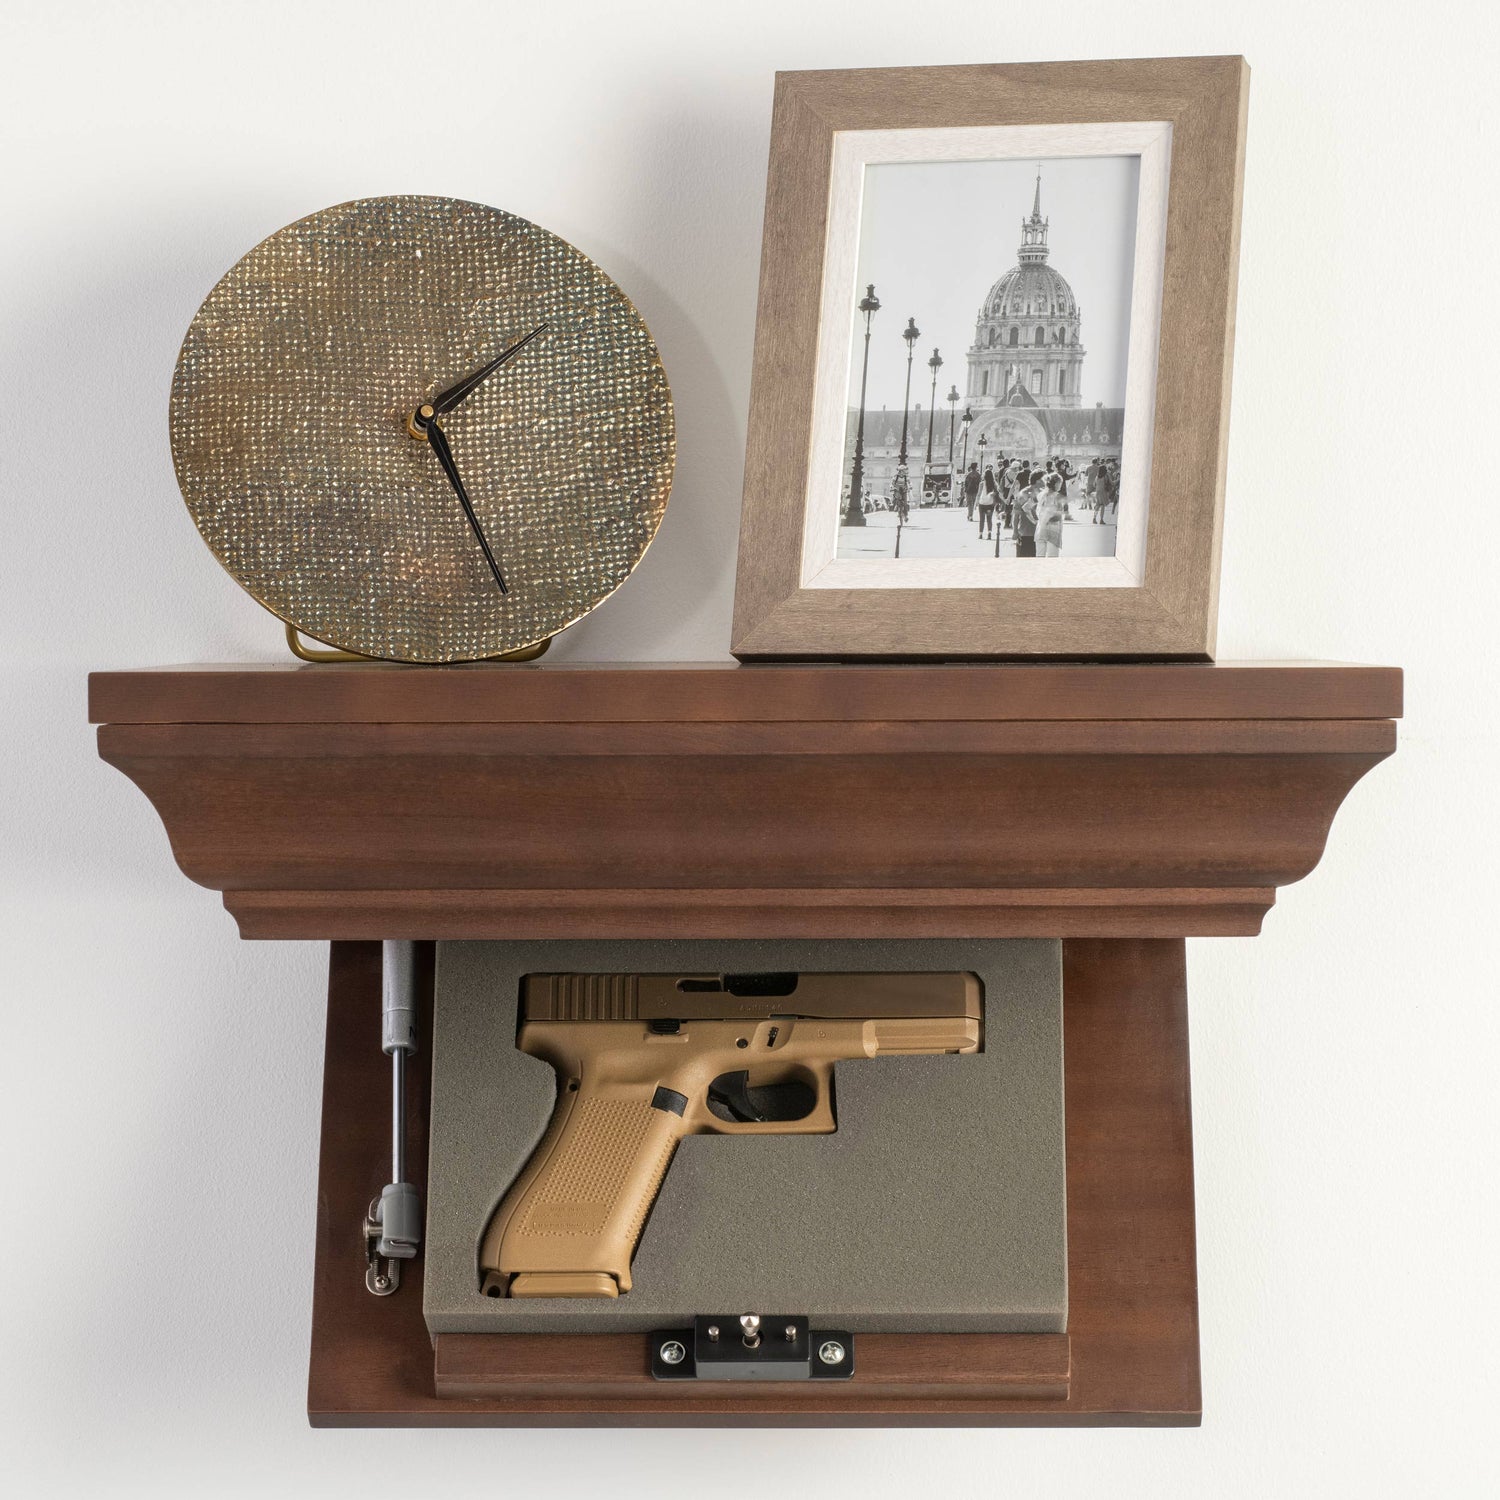 4 Things To Consider Before Buying A Hidden Gun Shelf